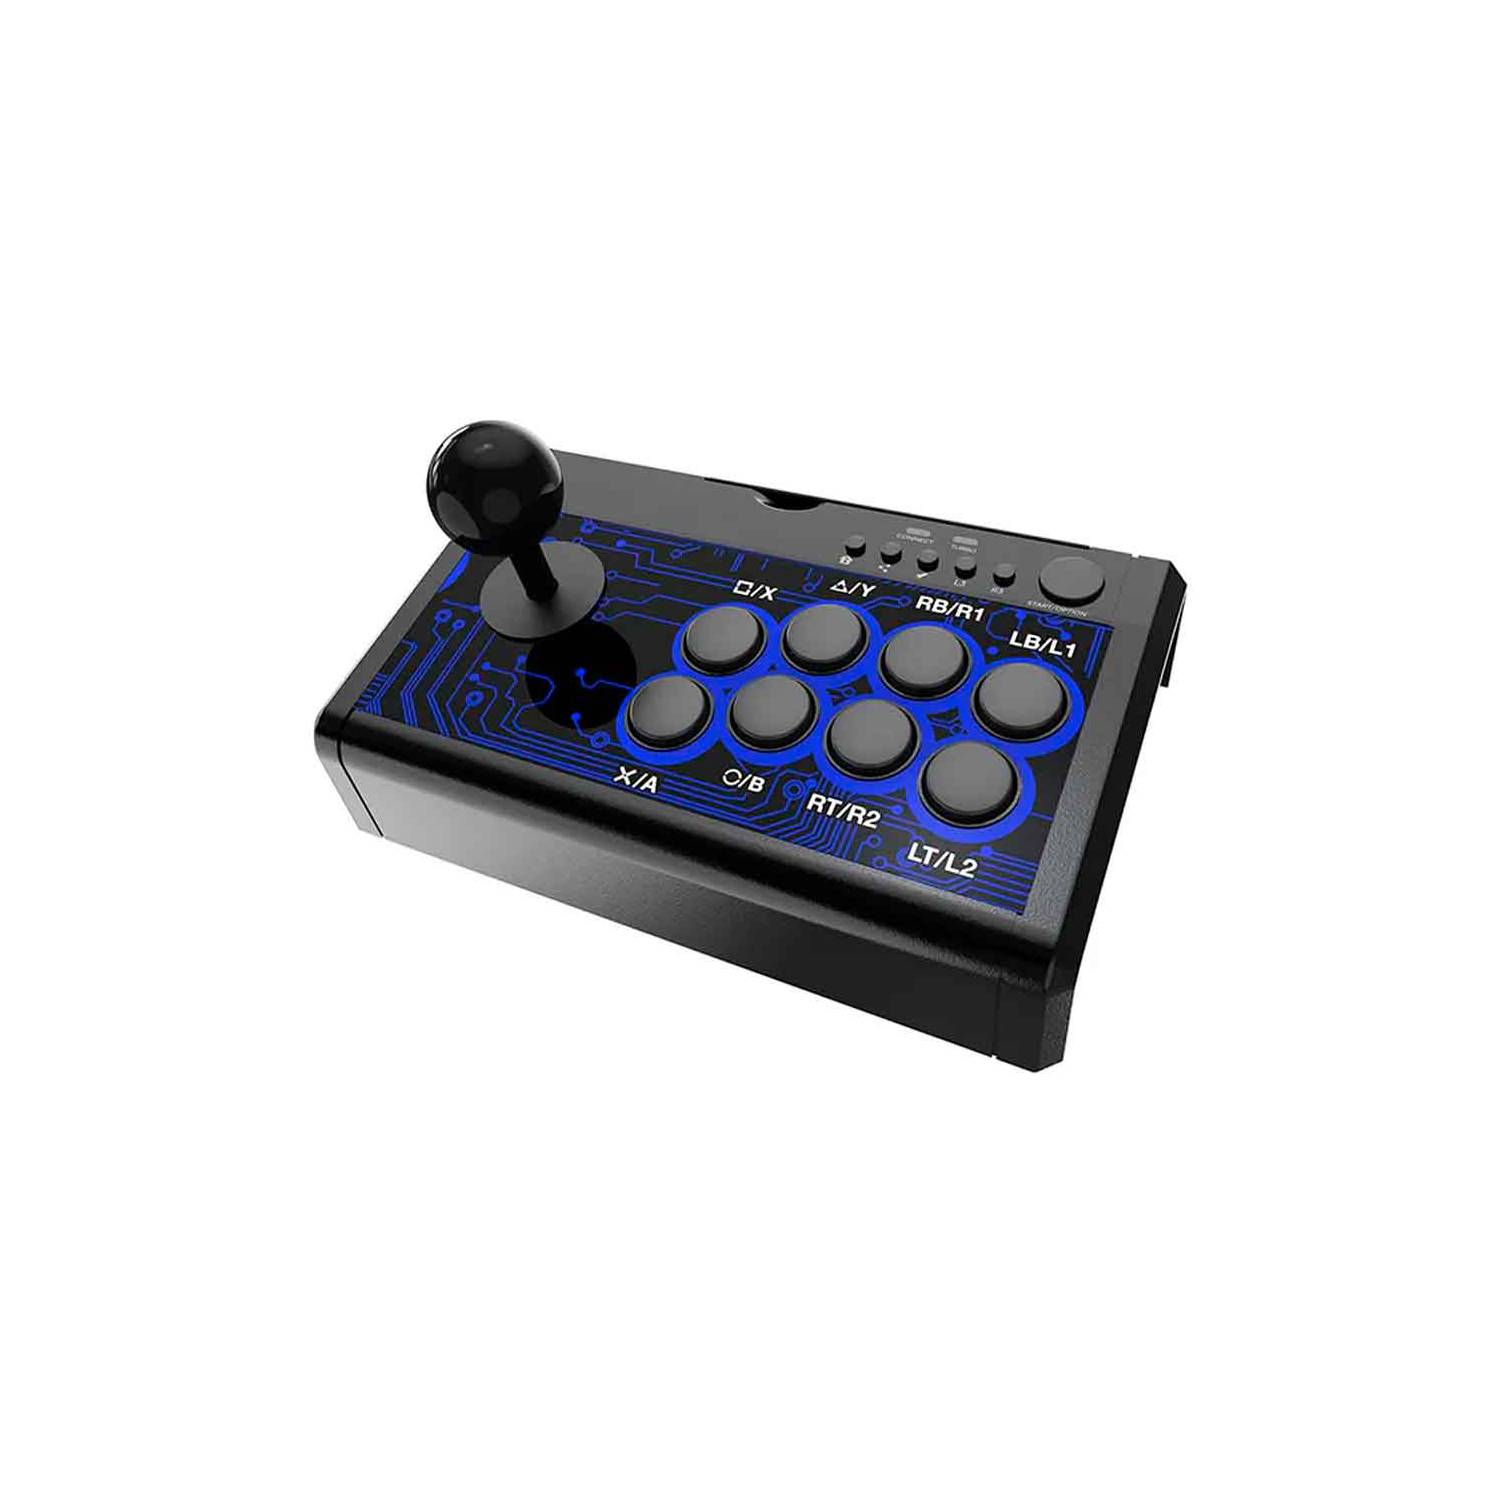 2 Controlador Joystick Arcade NJP 308 Compatible PC PS2 PS3 Android